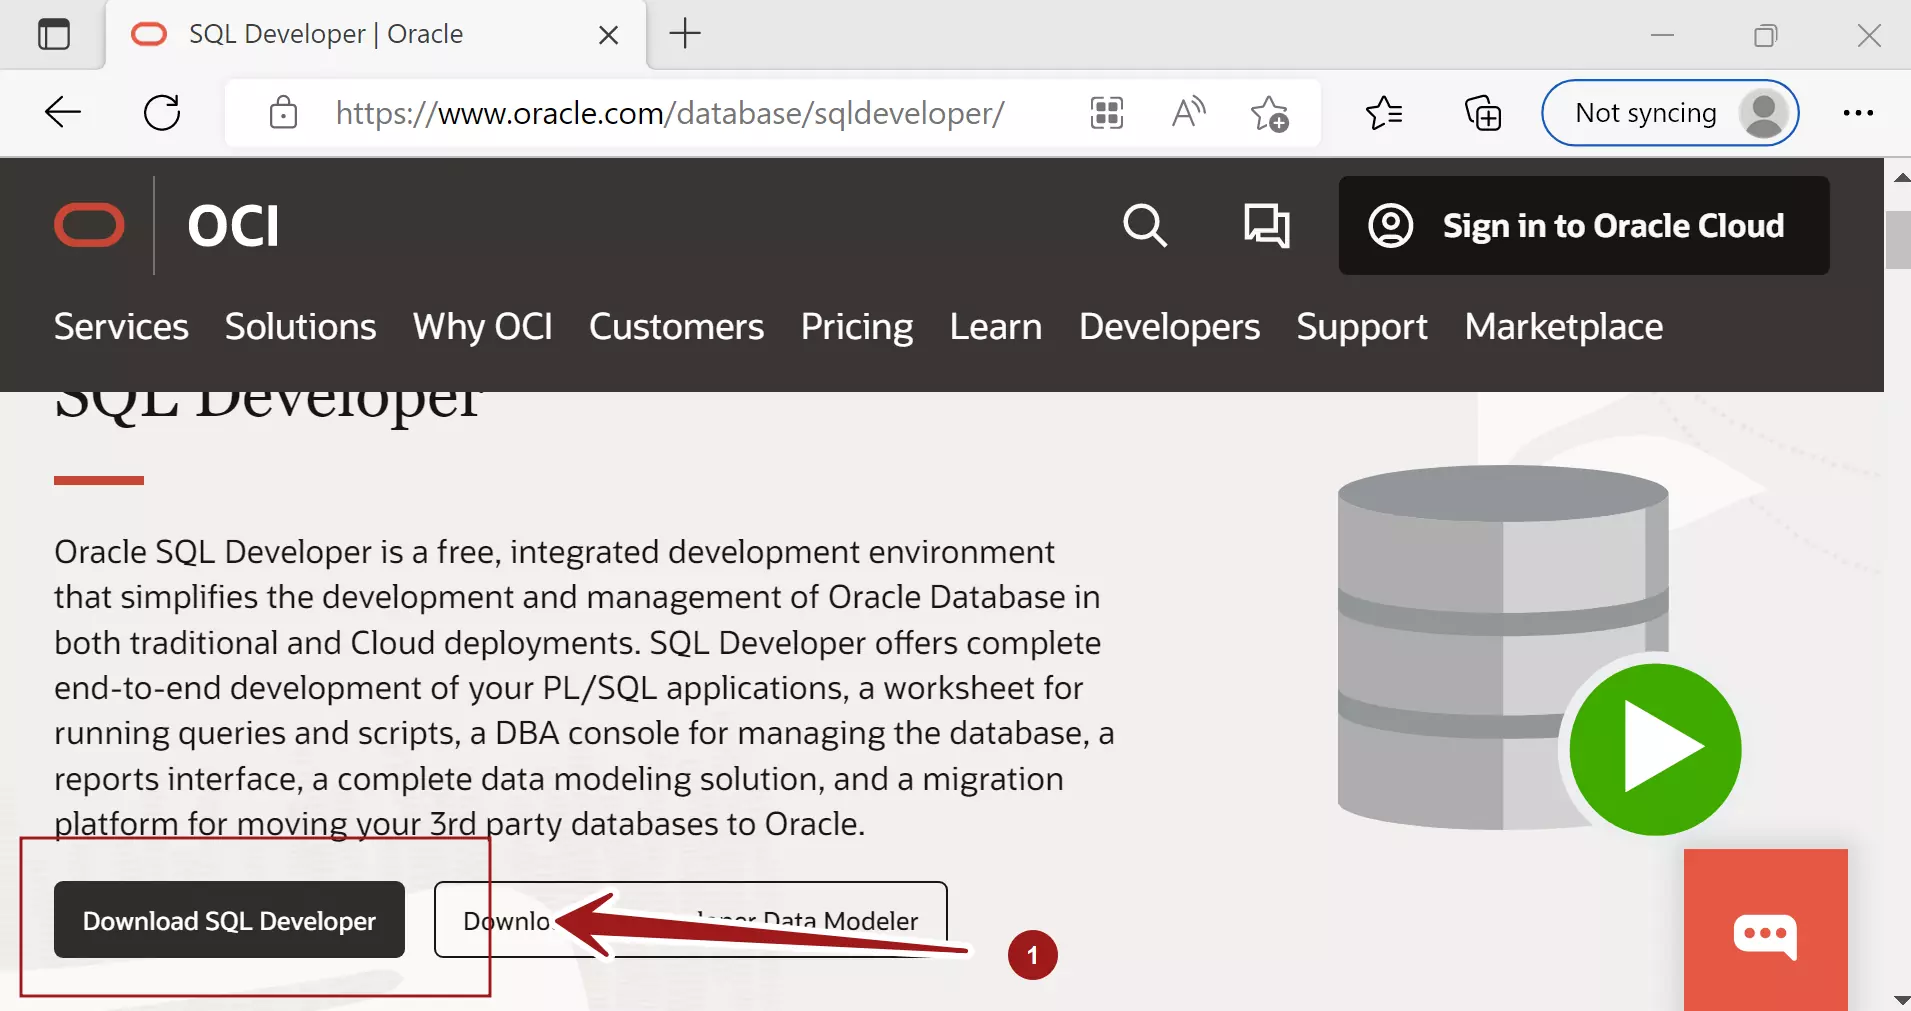 Download SQL Developer